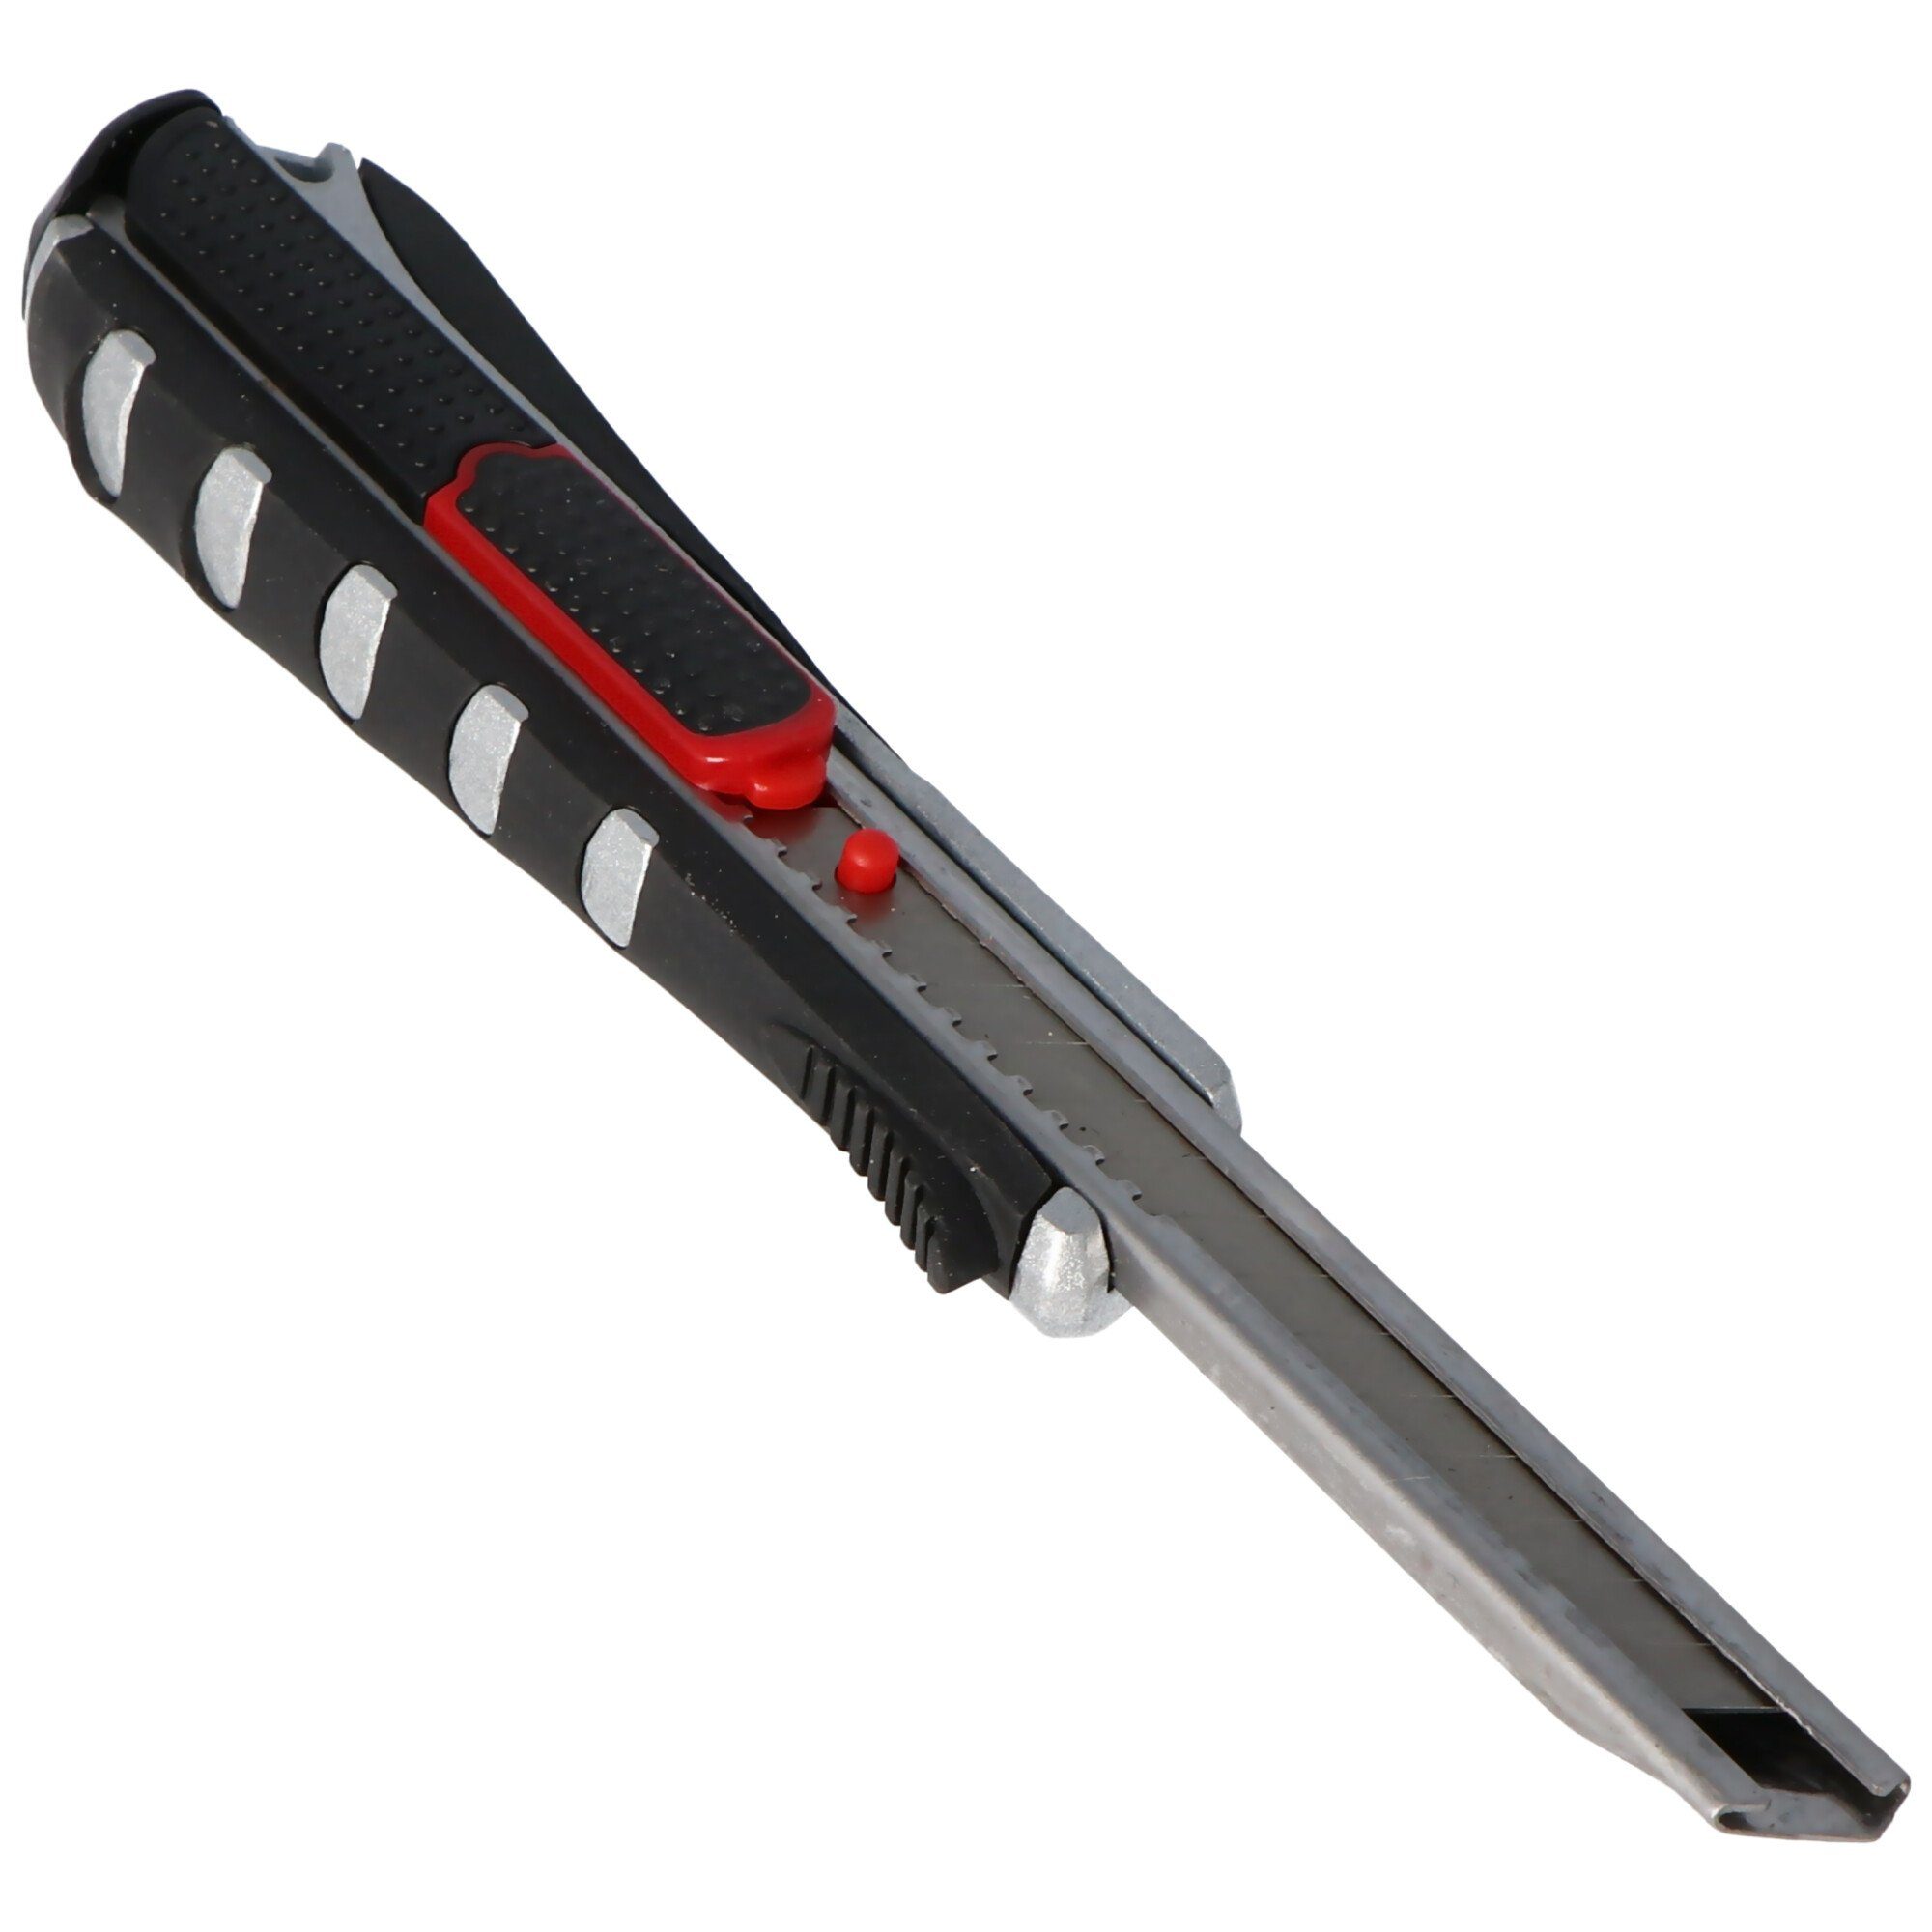 WEDO Cuttermesser Cutter 1-in-1 mit automatischem Rasterautomatik und Klingenrückzug au